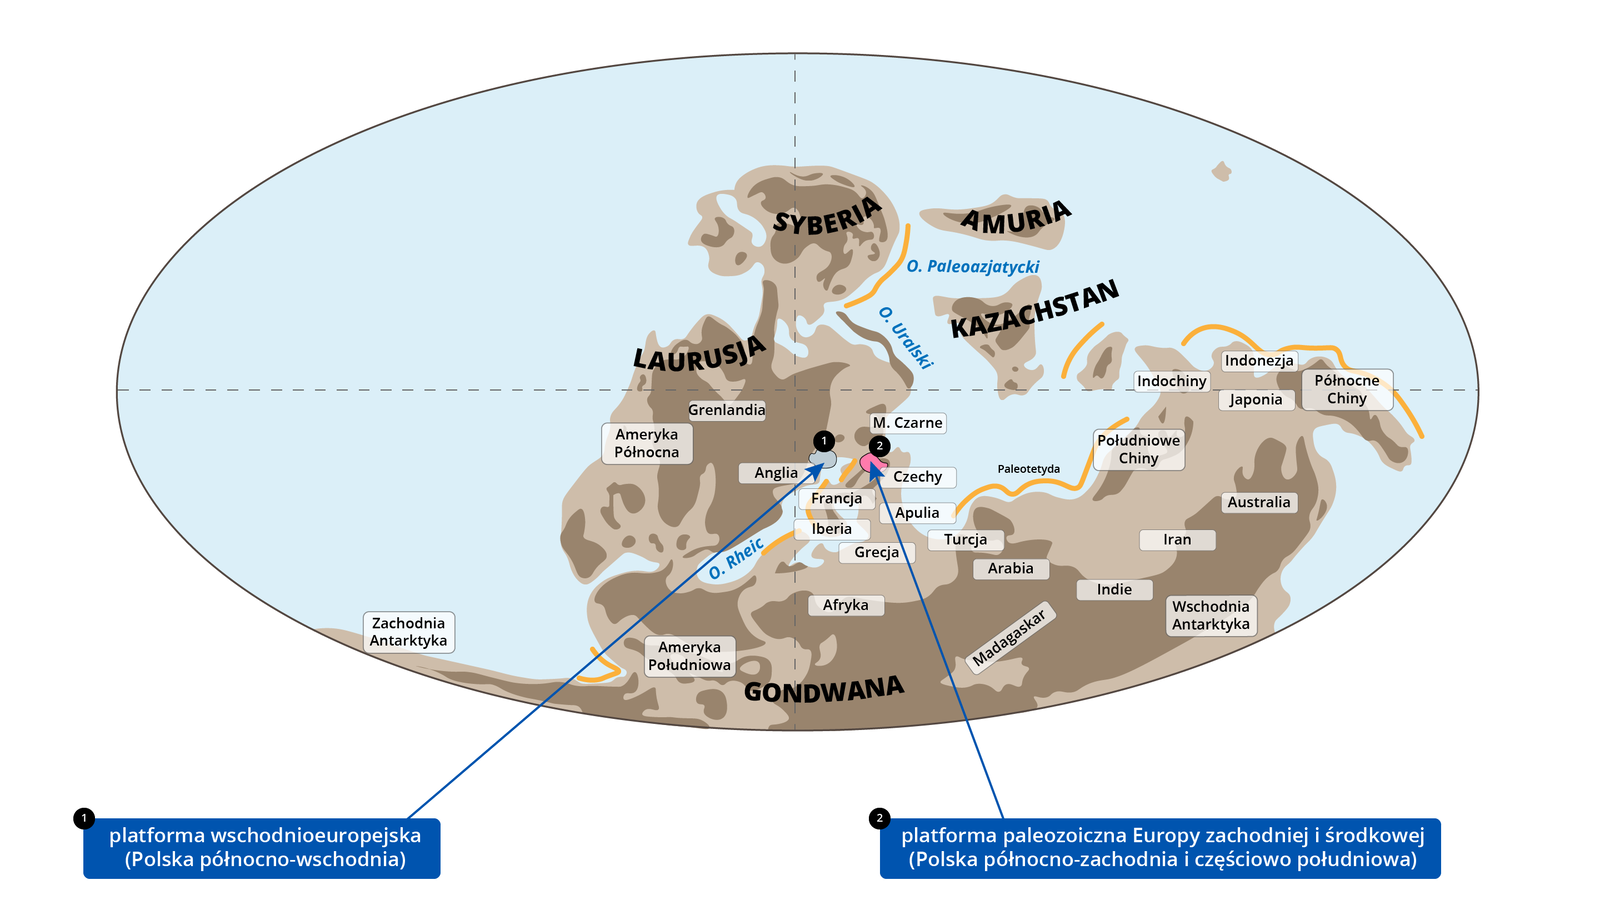 Ilustracja przedstawia owalną mapę świata prezentującą ewolucję Karpat w dewonie. Gondwana połączyła się z Laurusją, która z kolei jest połączona z Syberią. Gondwanę z resztą lądu dzieli Ocean Rheic. Na wschód od Syberii jest Amuria, a pod Amurią leży Kazachstan. W południowo-wschodniej części Laurusji, obok Anglii, zaznaczono platformę wschodnioeuropejską (Polska północno-wschodnia). Powyżej Czech wyróżniono platformę paleozoiczną Europy zachodniej i środkowej (Polska północno-wschodnia i częściowo południowa). 